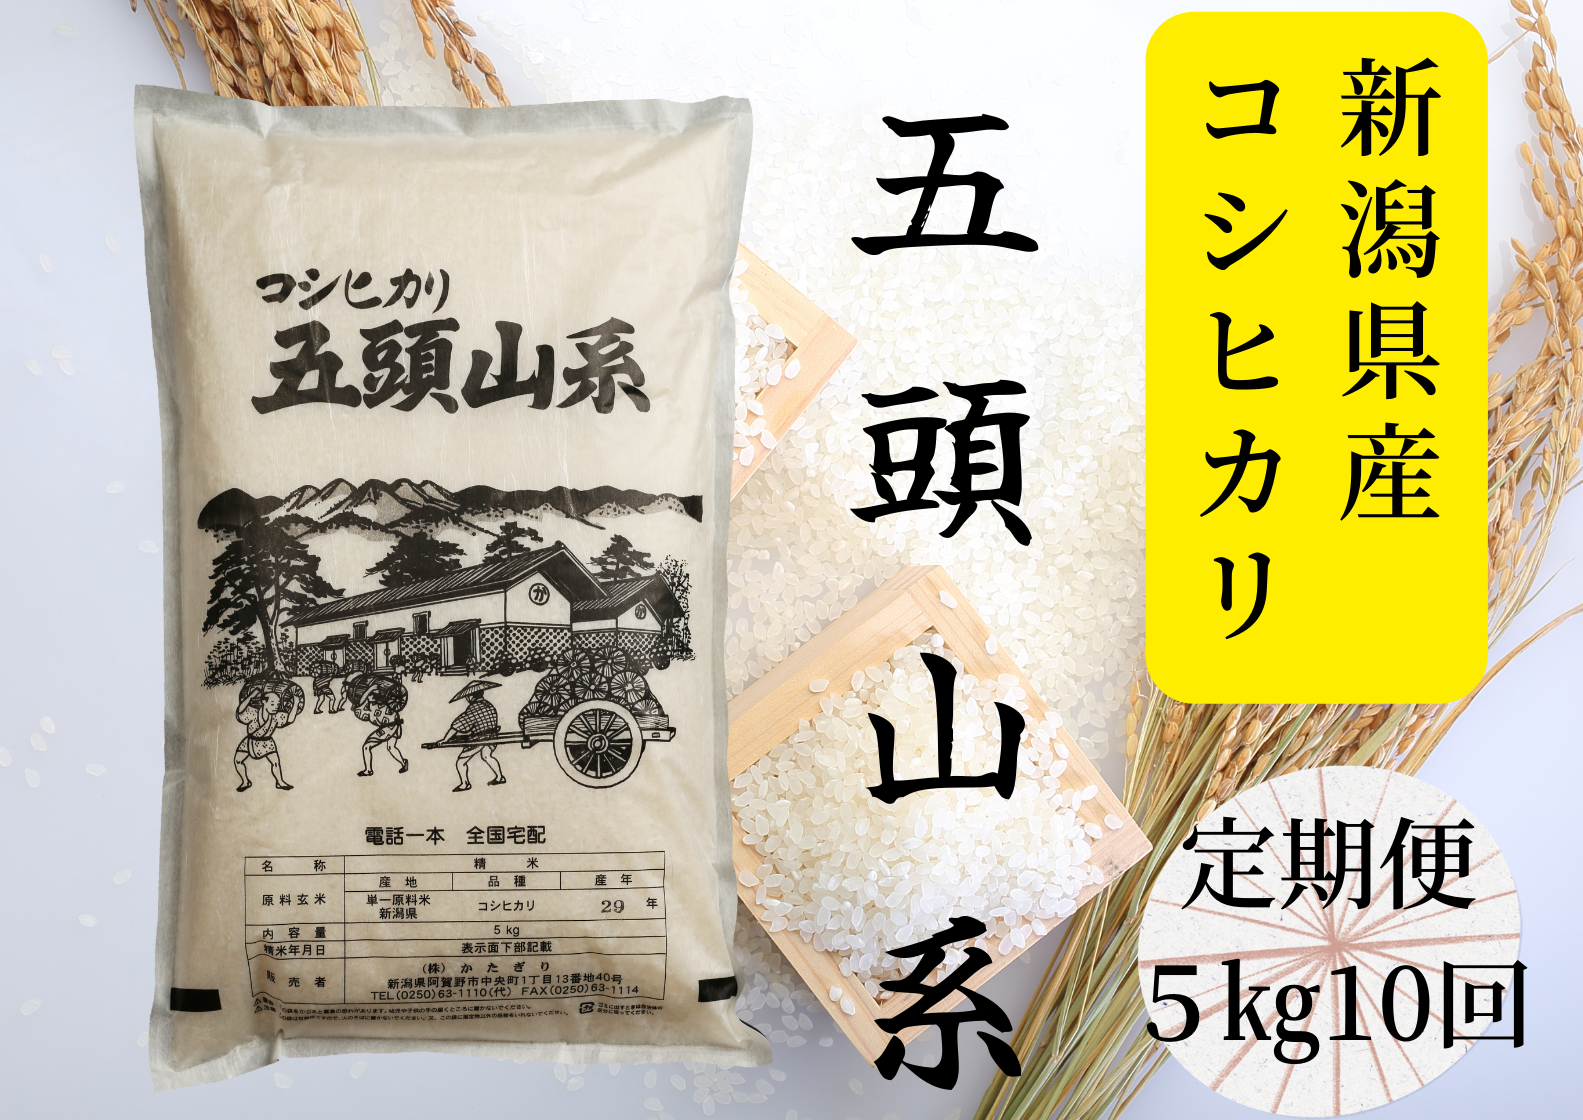 【10回定期便】「米屋のこだわり阿賀野市産」コシヒカリ5kg×10回 1E23086